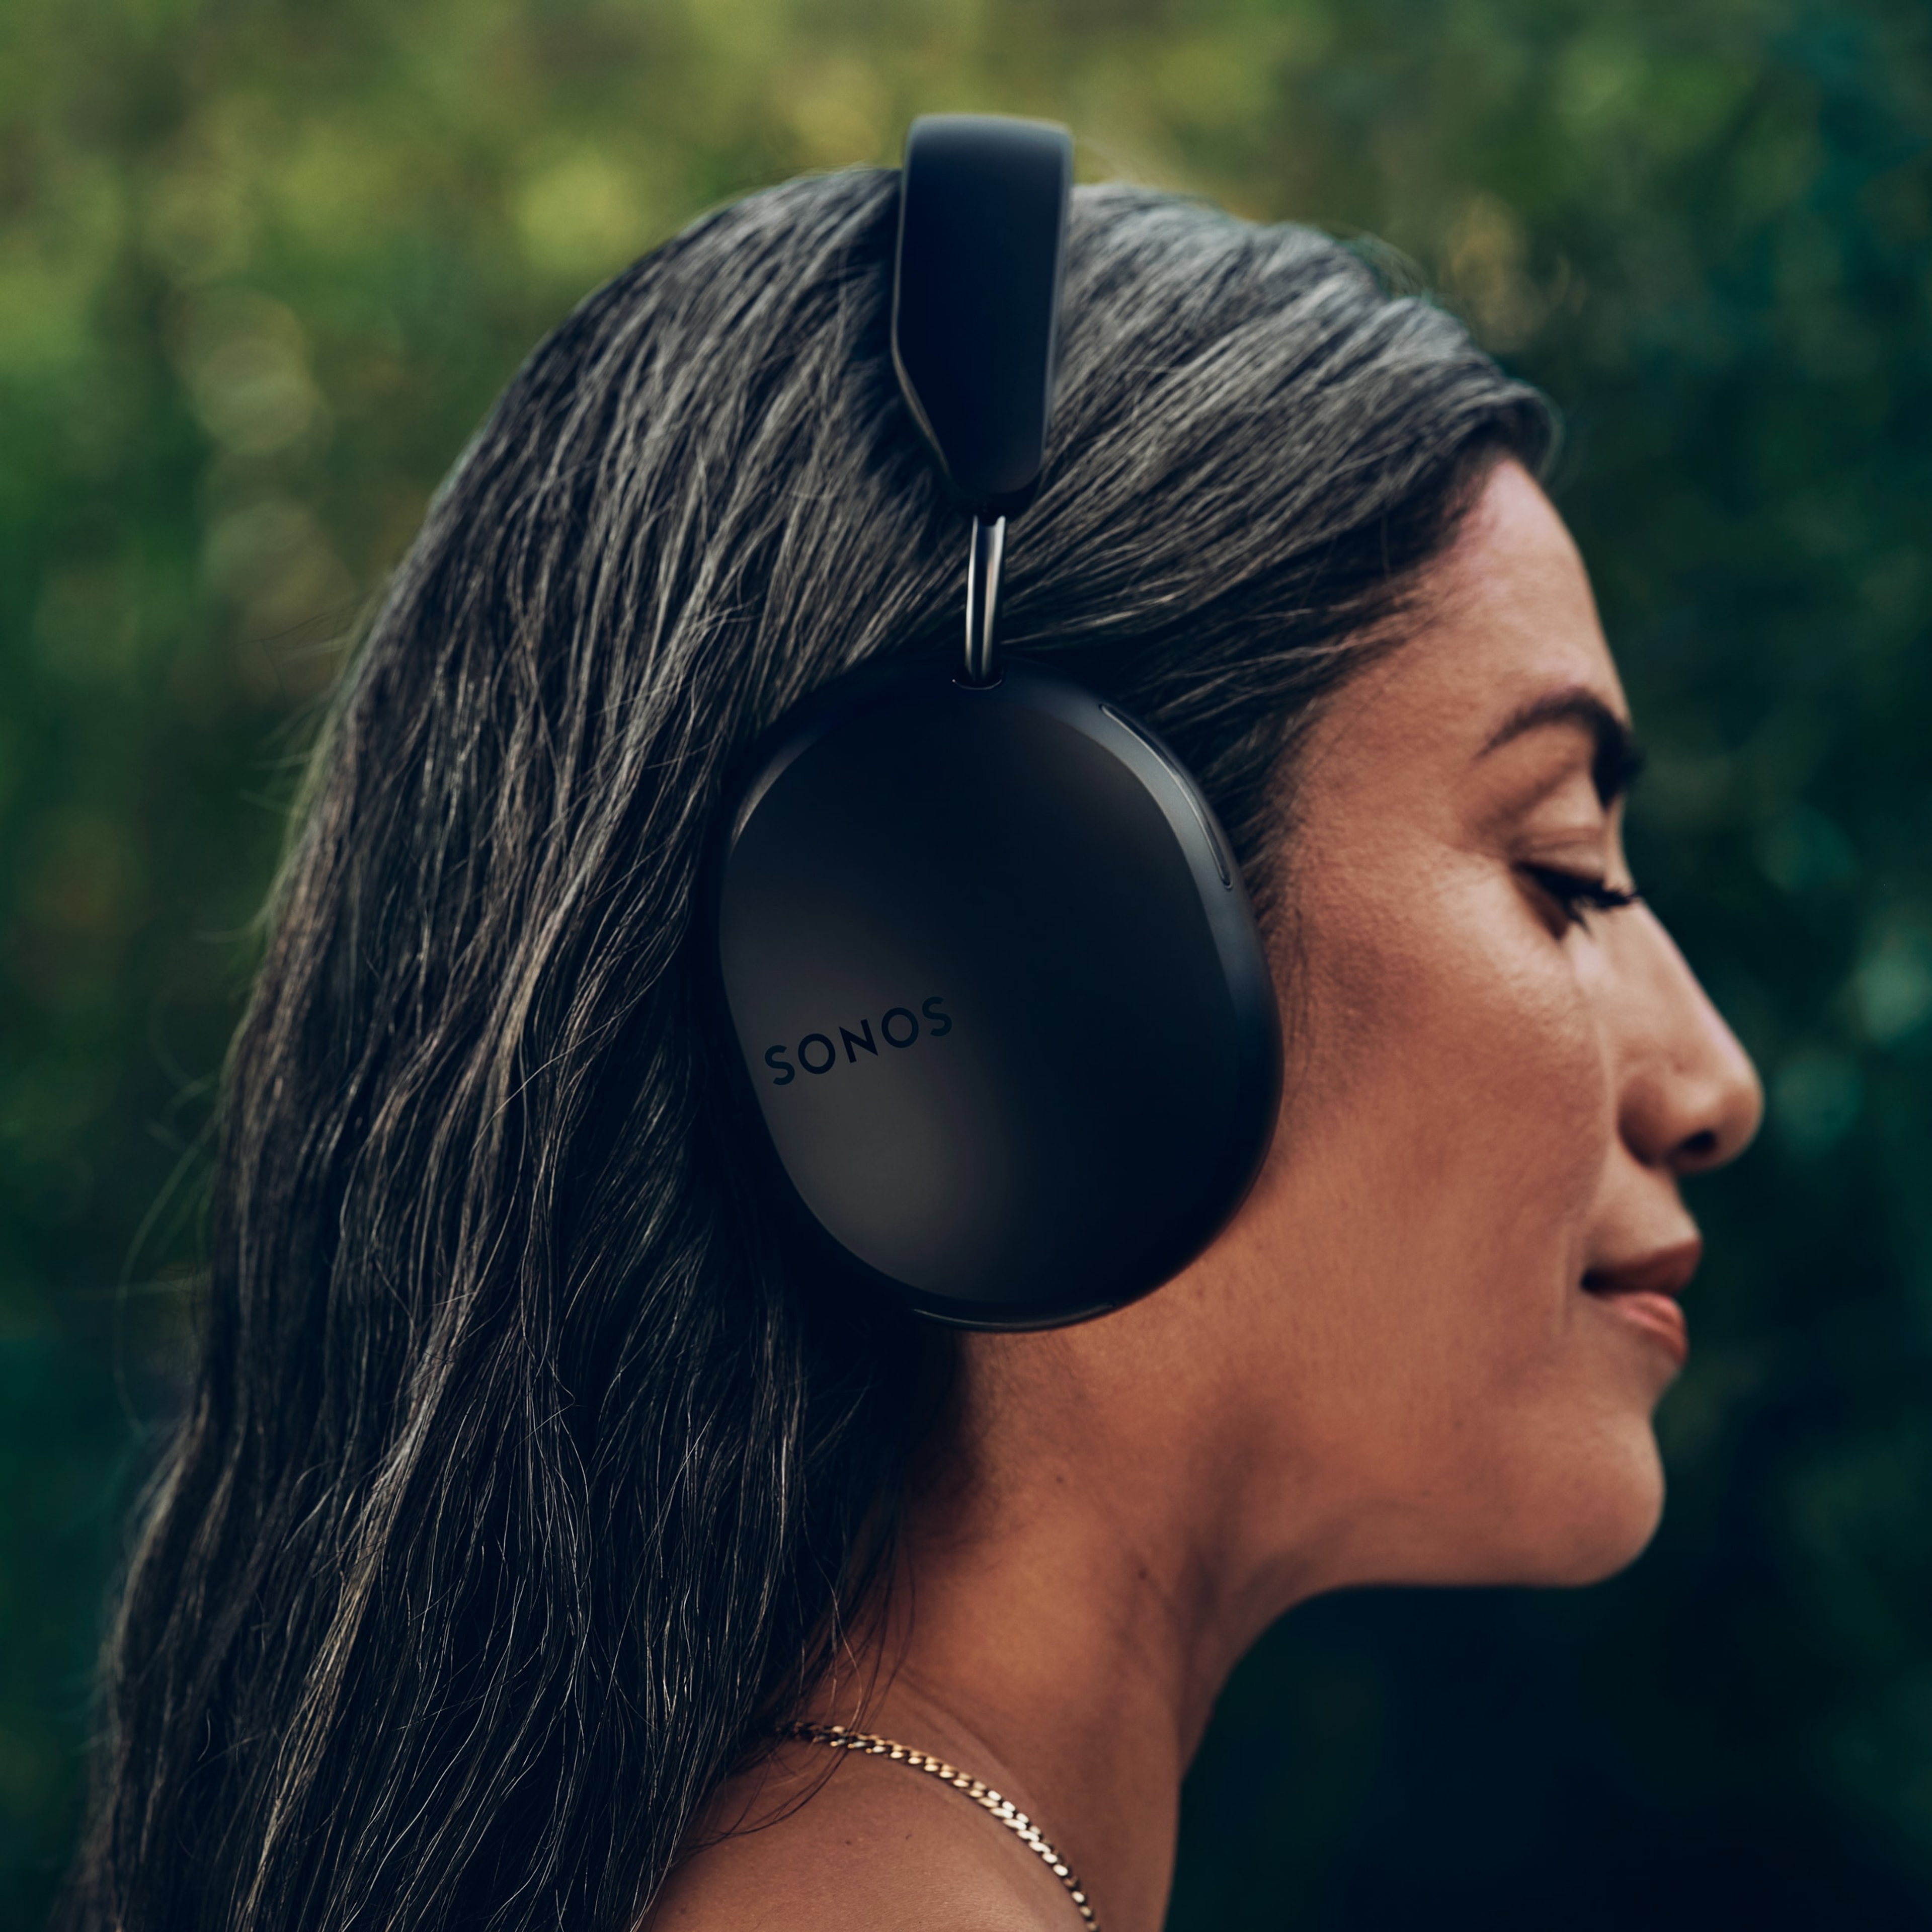 Profilbilde av kvinne som har på et par svarte Sonos Ace-hodetelefoner